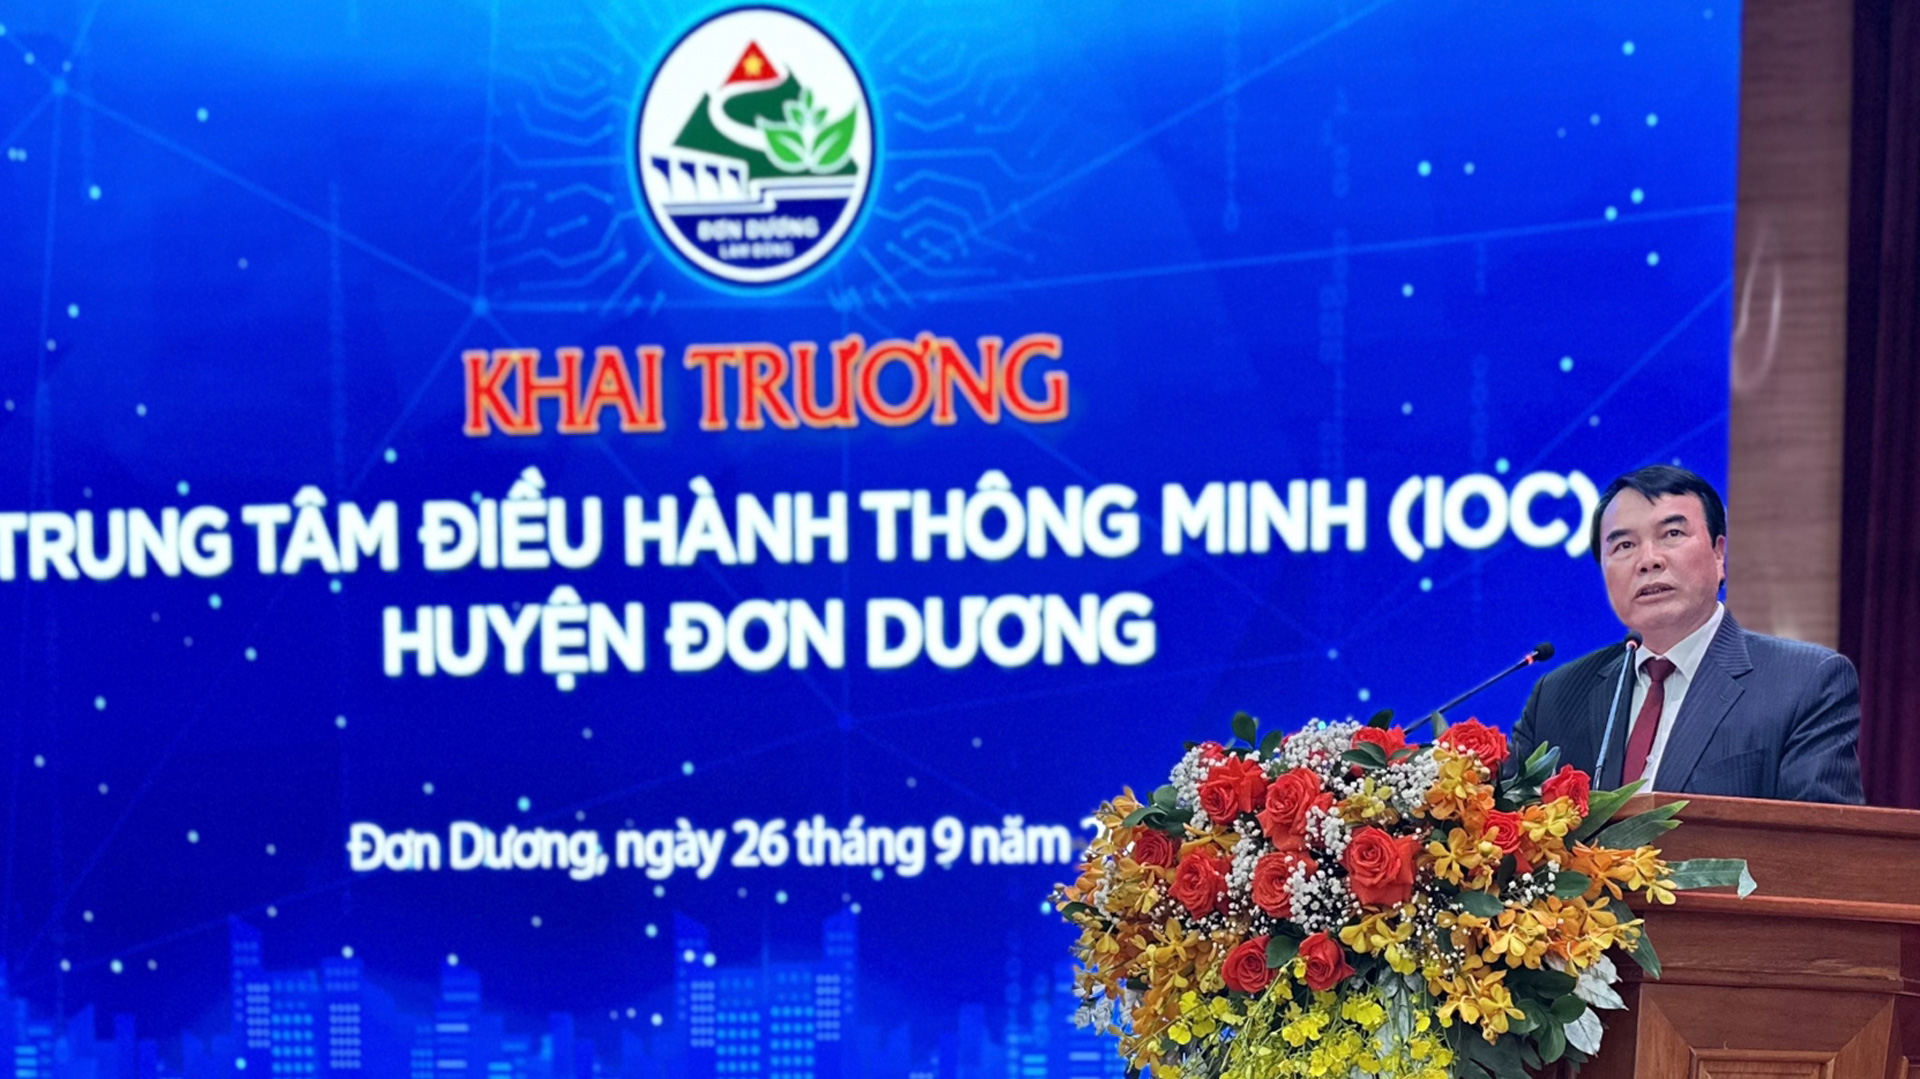 Đồng chí Phạm S - Phó Chủ tịch UBND tỉnh Lâm Đồng pháo biểu tại buổi lễ